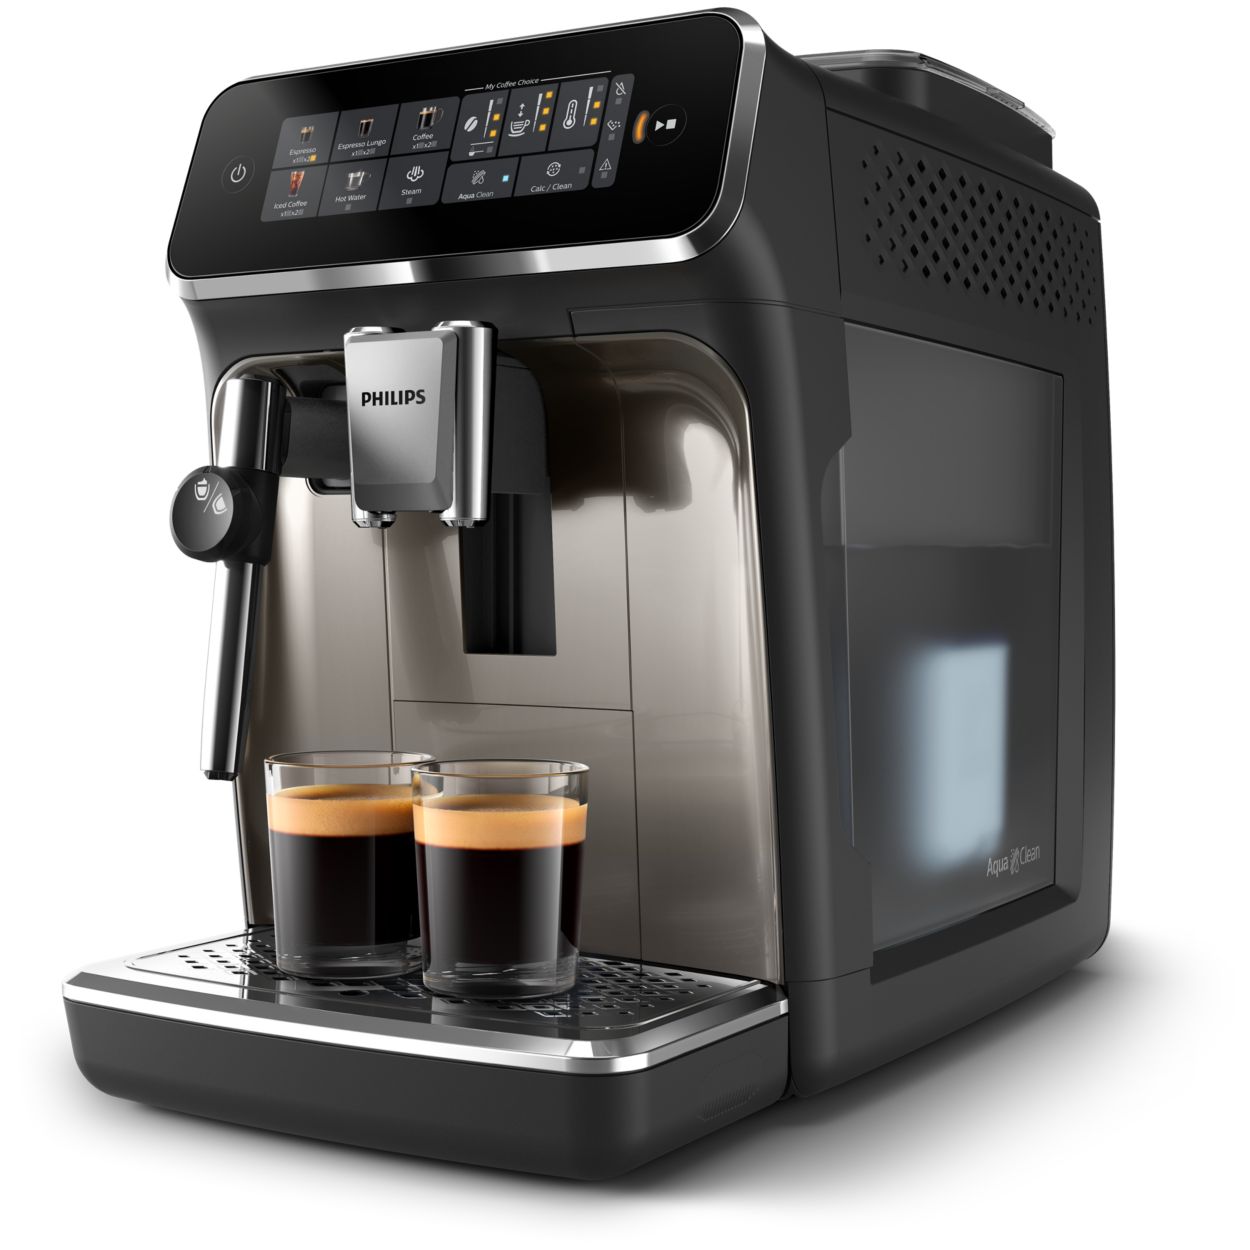 Tasse doseuse de café, tasse doseuse en acier inoxydable Partie de la tasse  d'alimentation en poudre Accès à la machine à café expresso